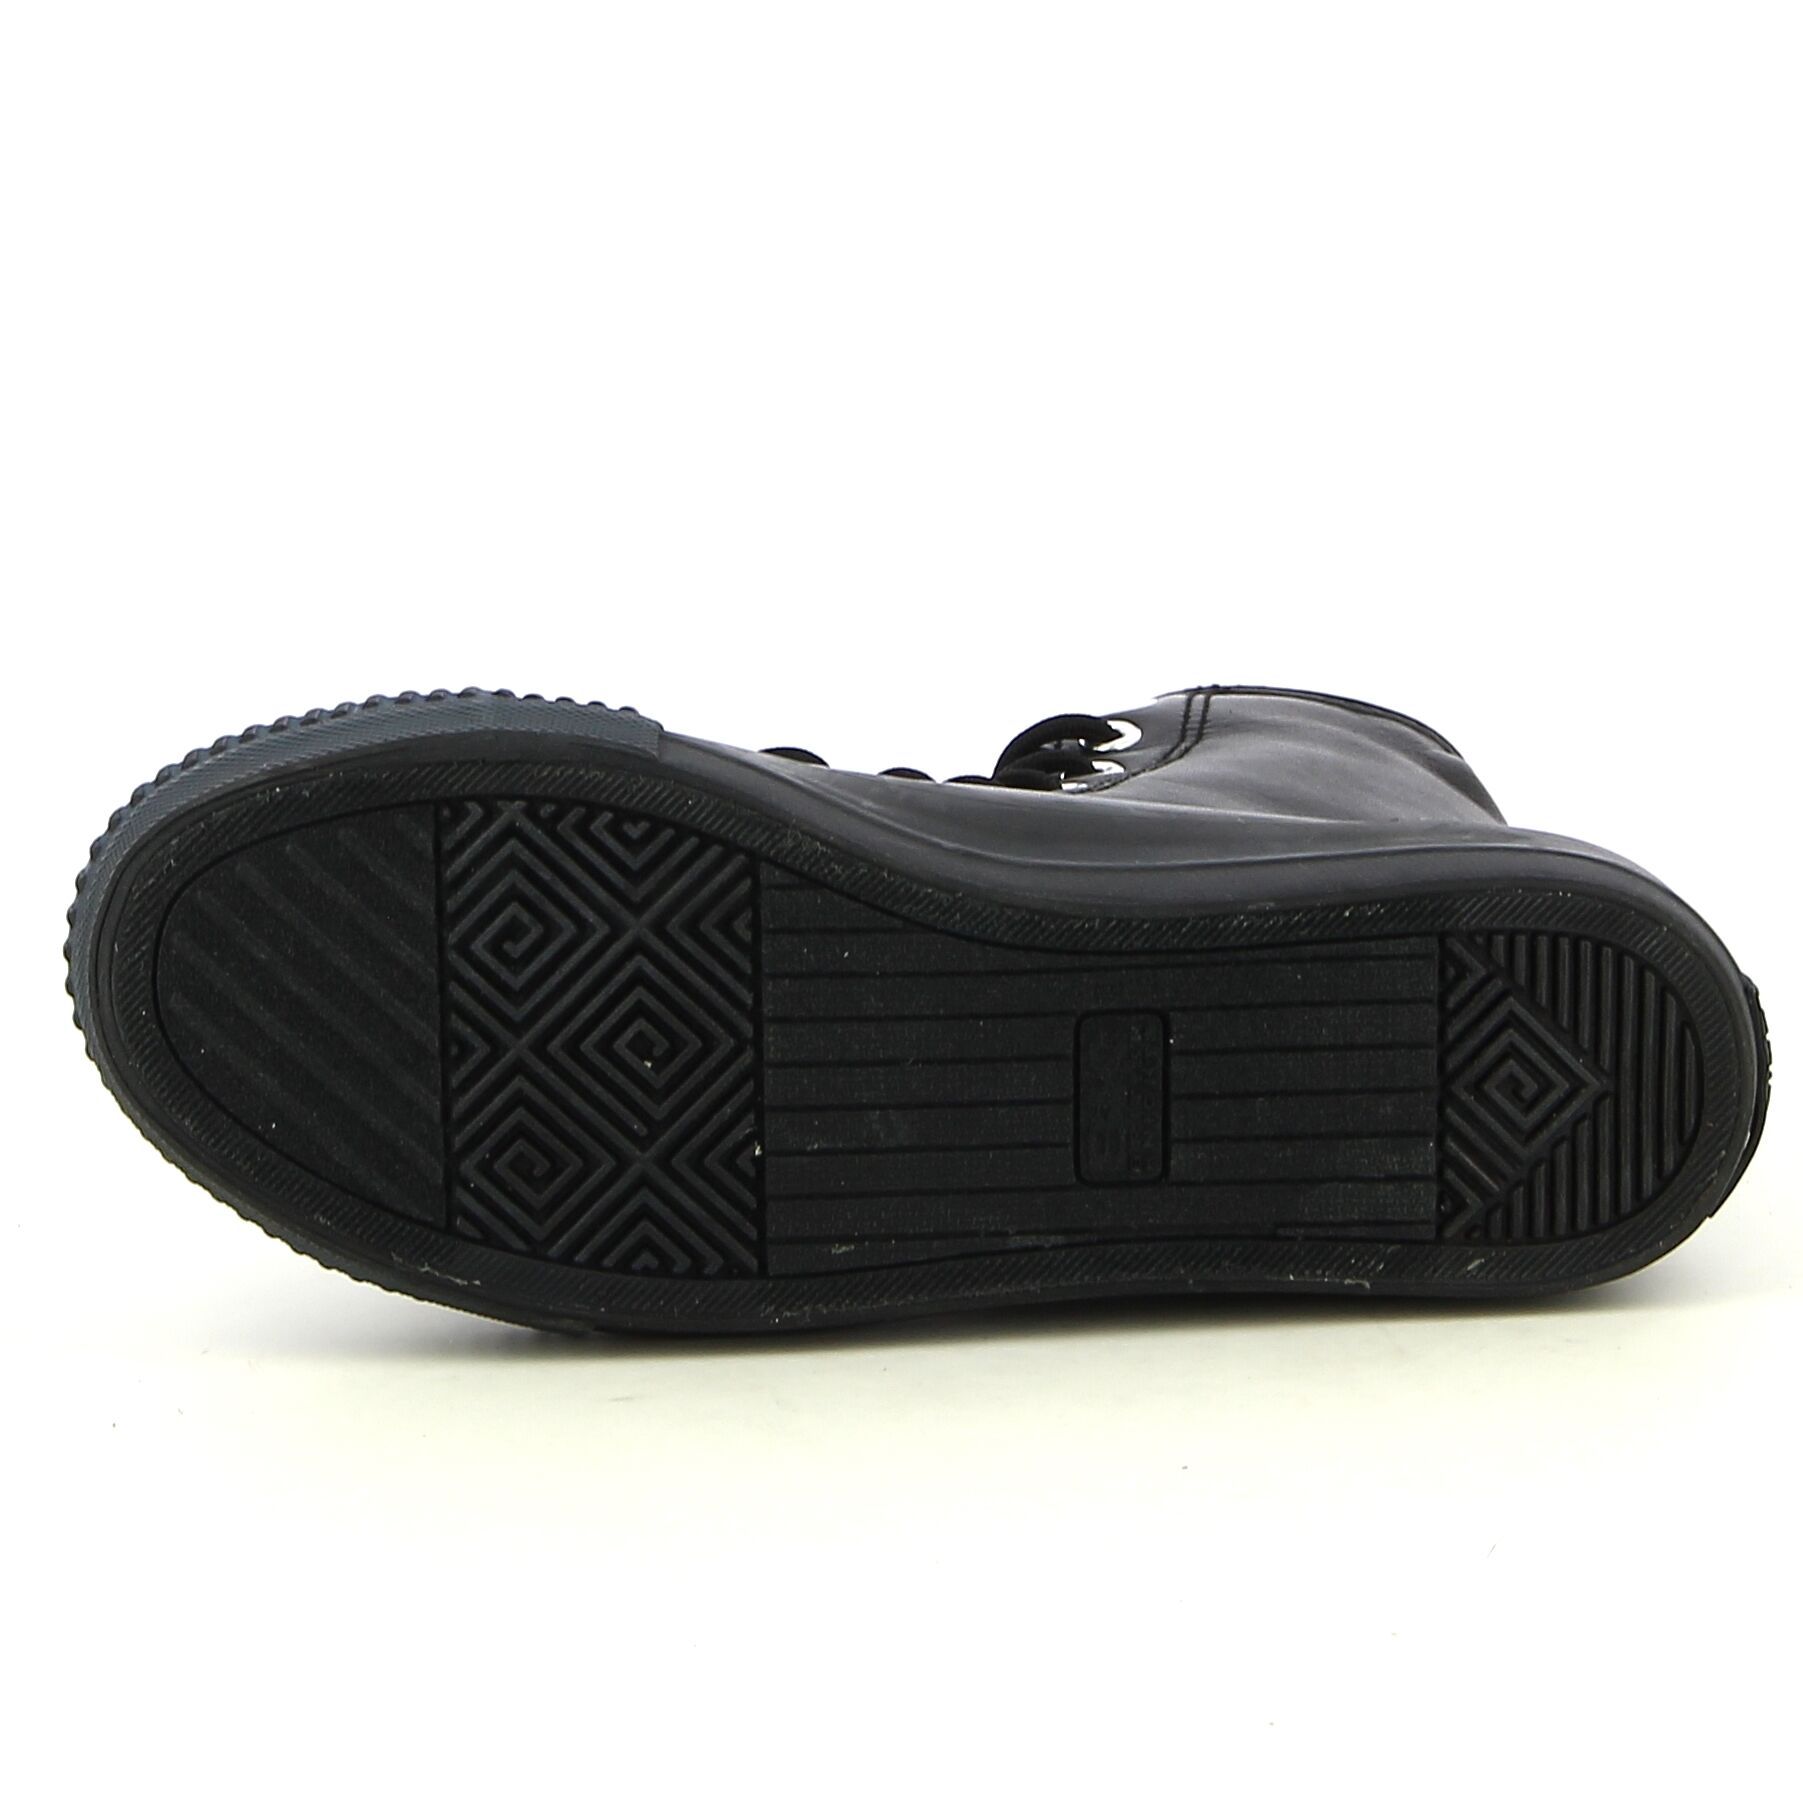 BK - Zwart - Sneakers